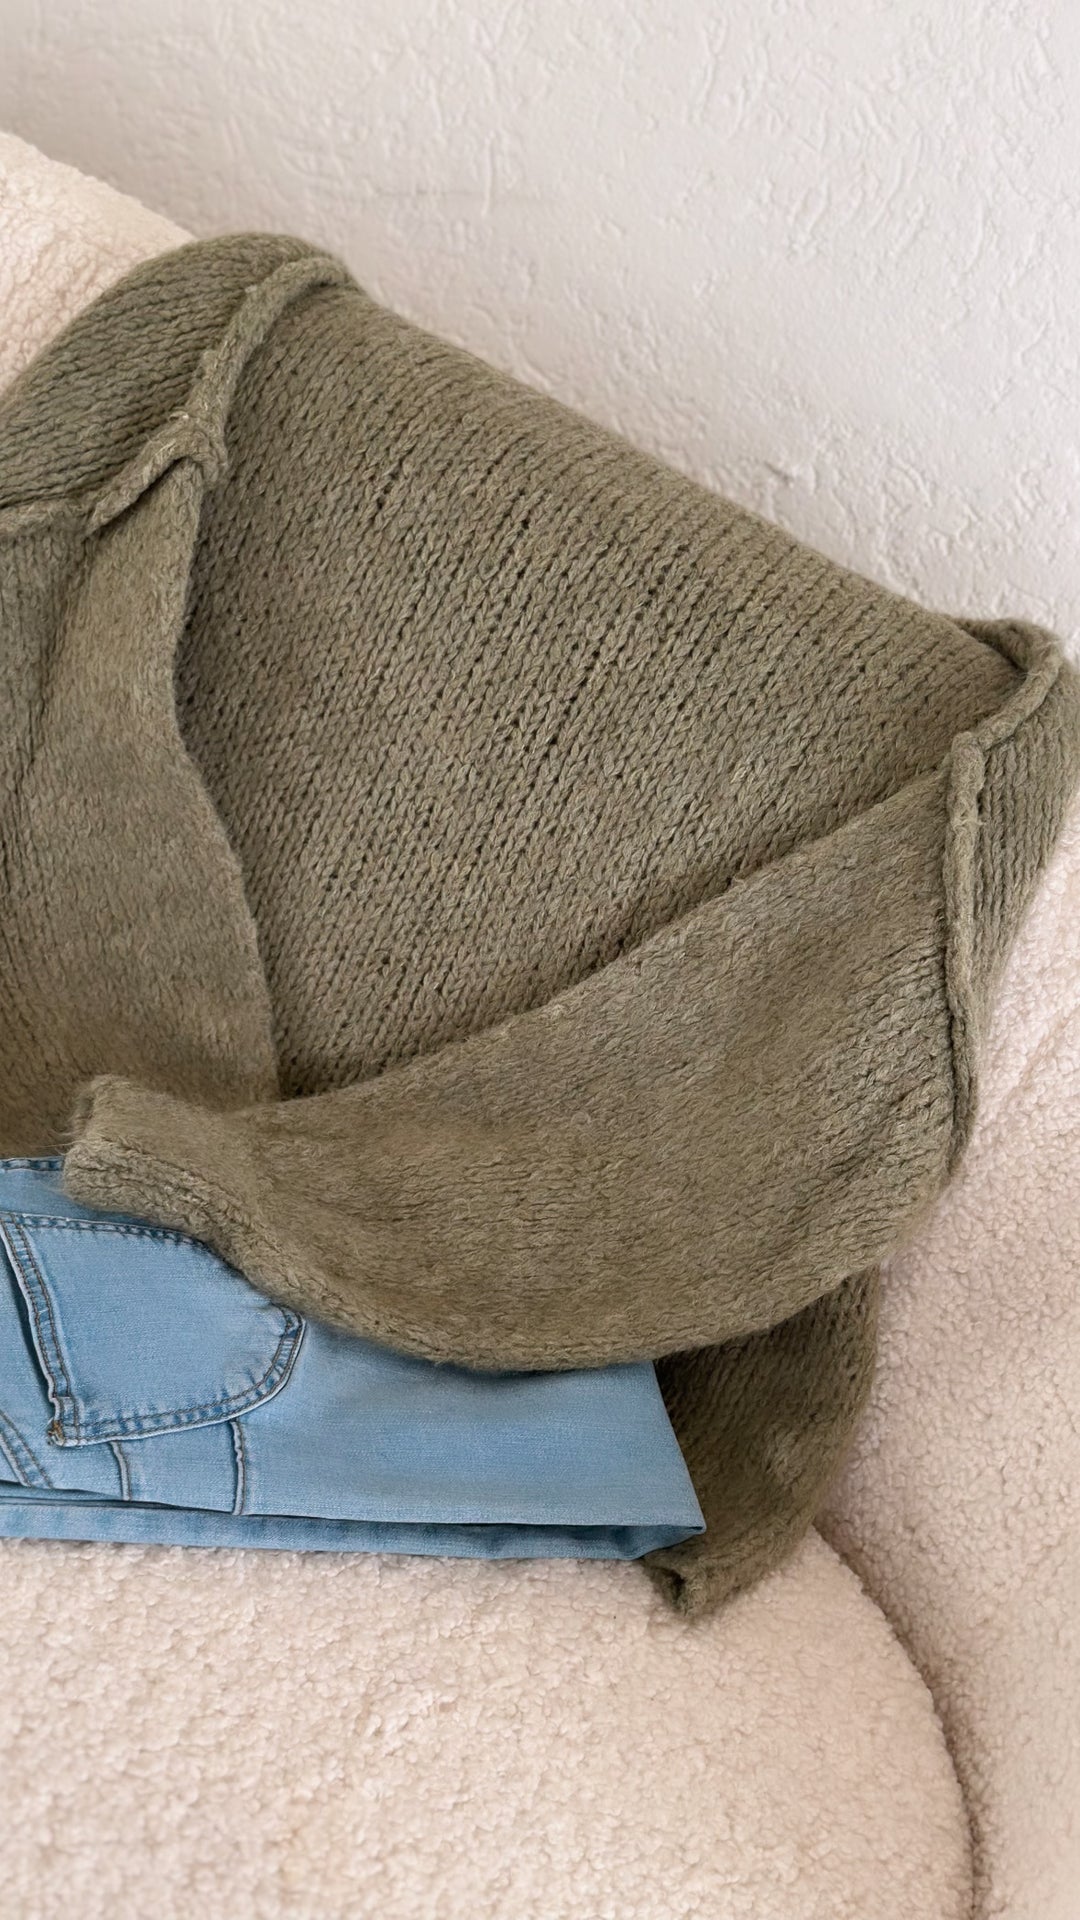 weicher oversize Pullover mit Ziernaht, Stehkragen / soft khaki Art. 5542